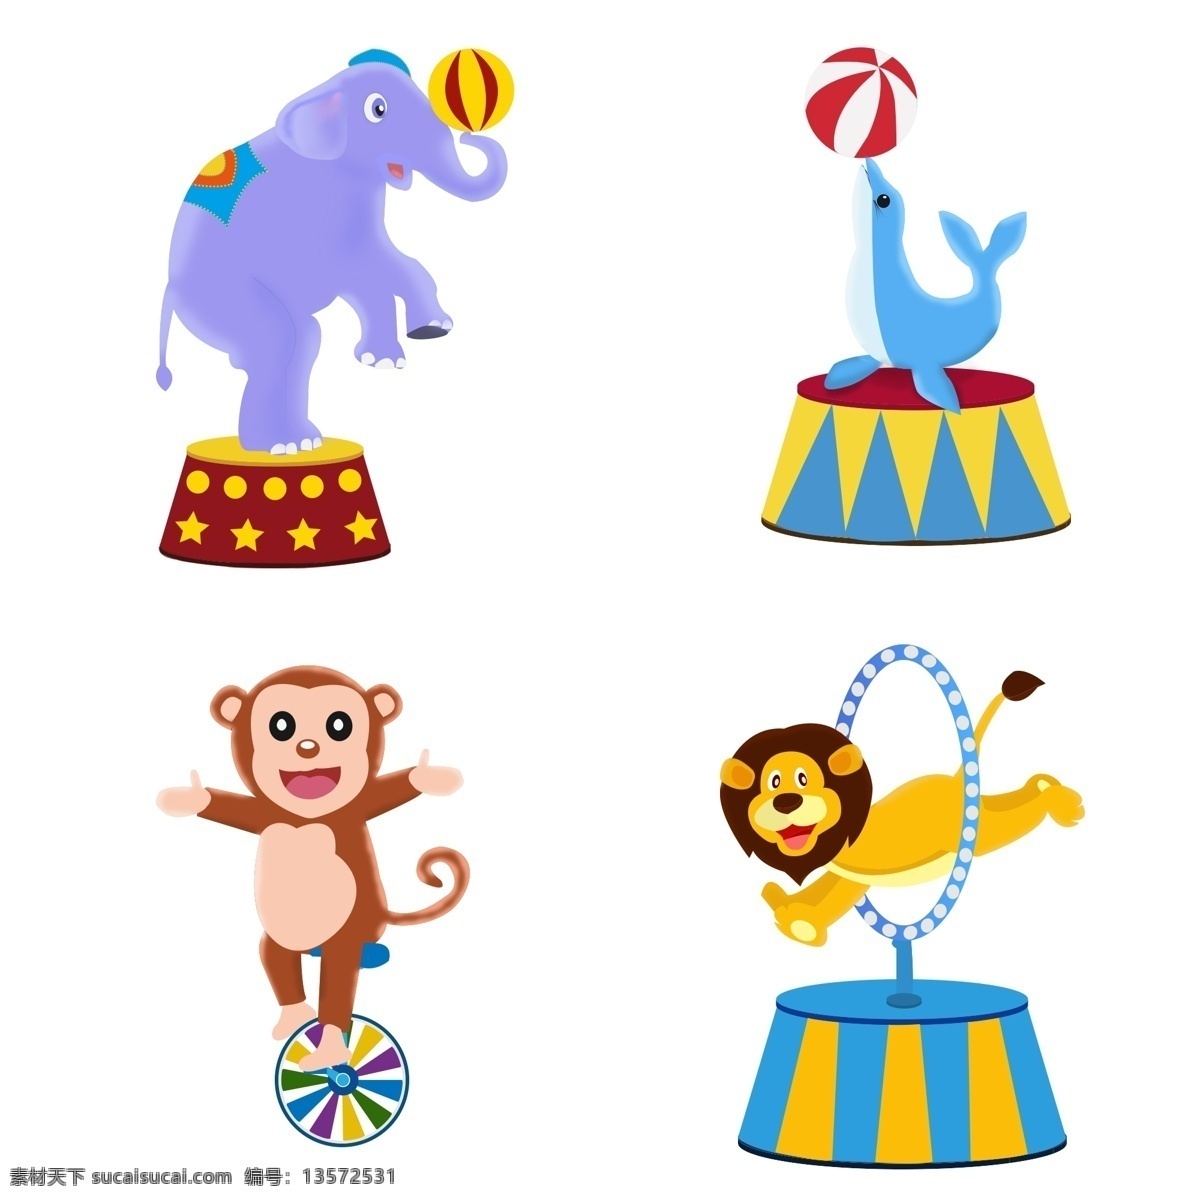 马戏团 动物 表演 卡通愚人节 愚人节狂欢 杂耍 大象 球 顶球 海豚 猴子骑车 狮子钻圈 动物表演